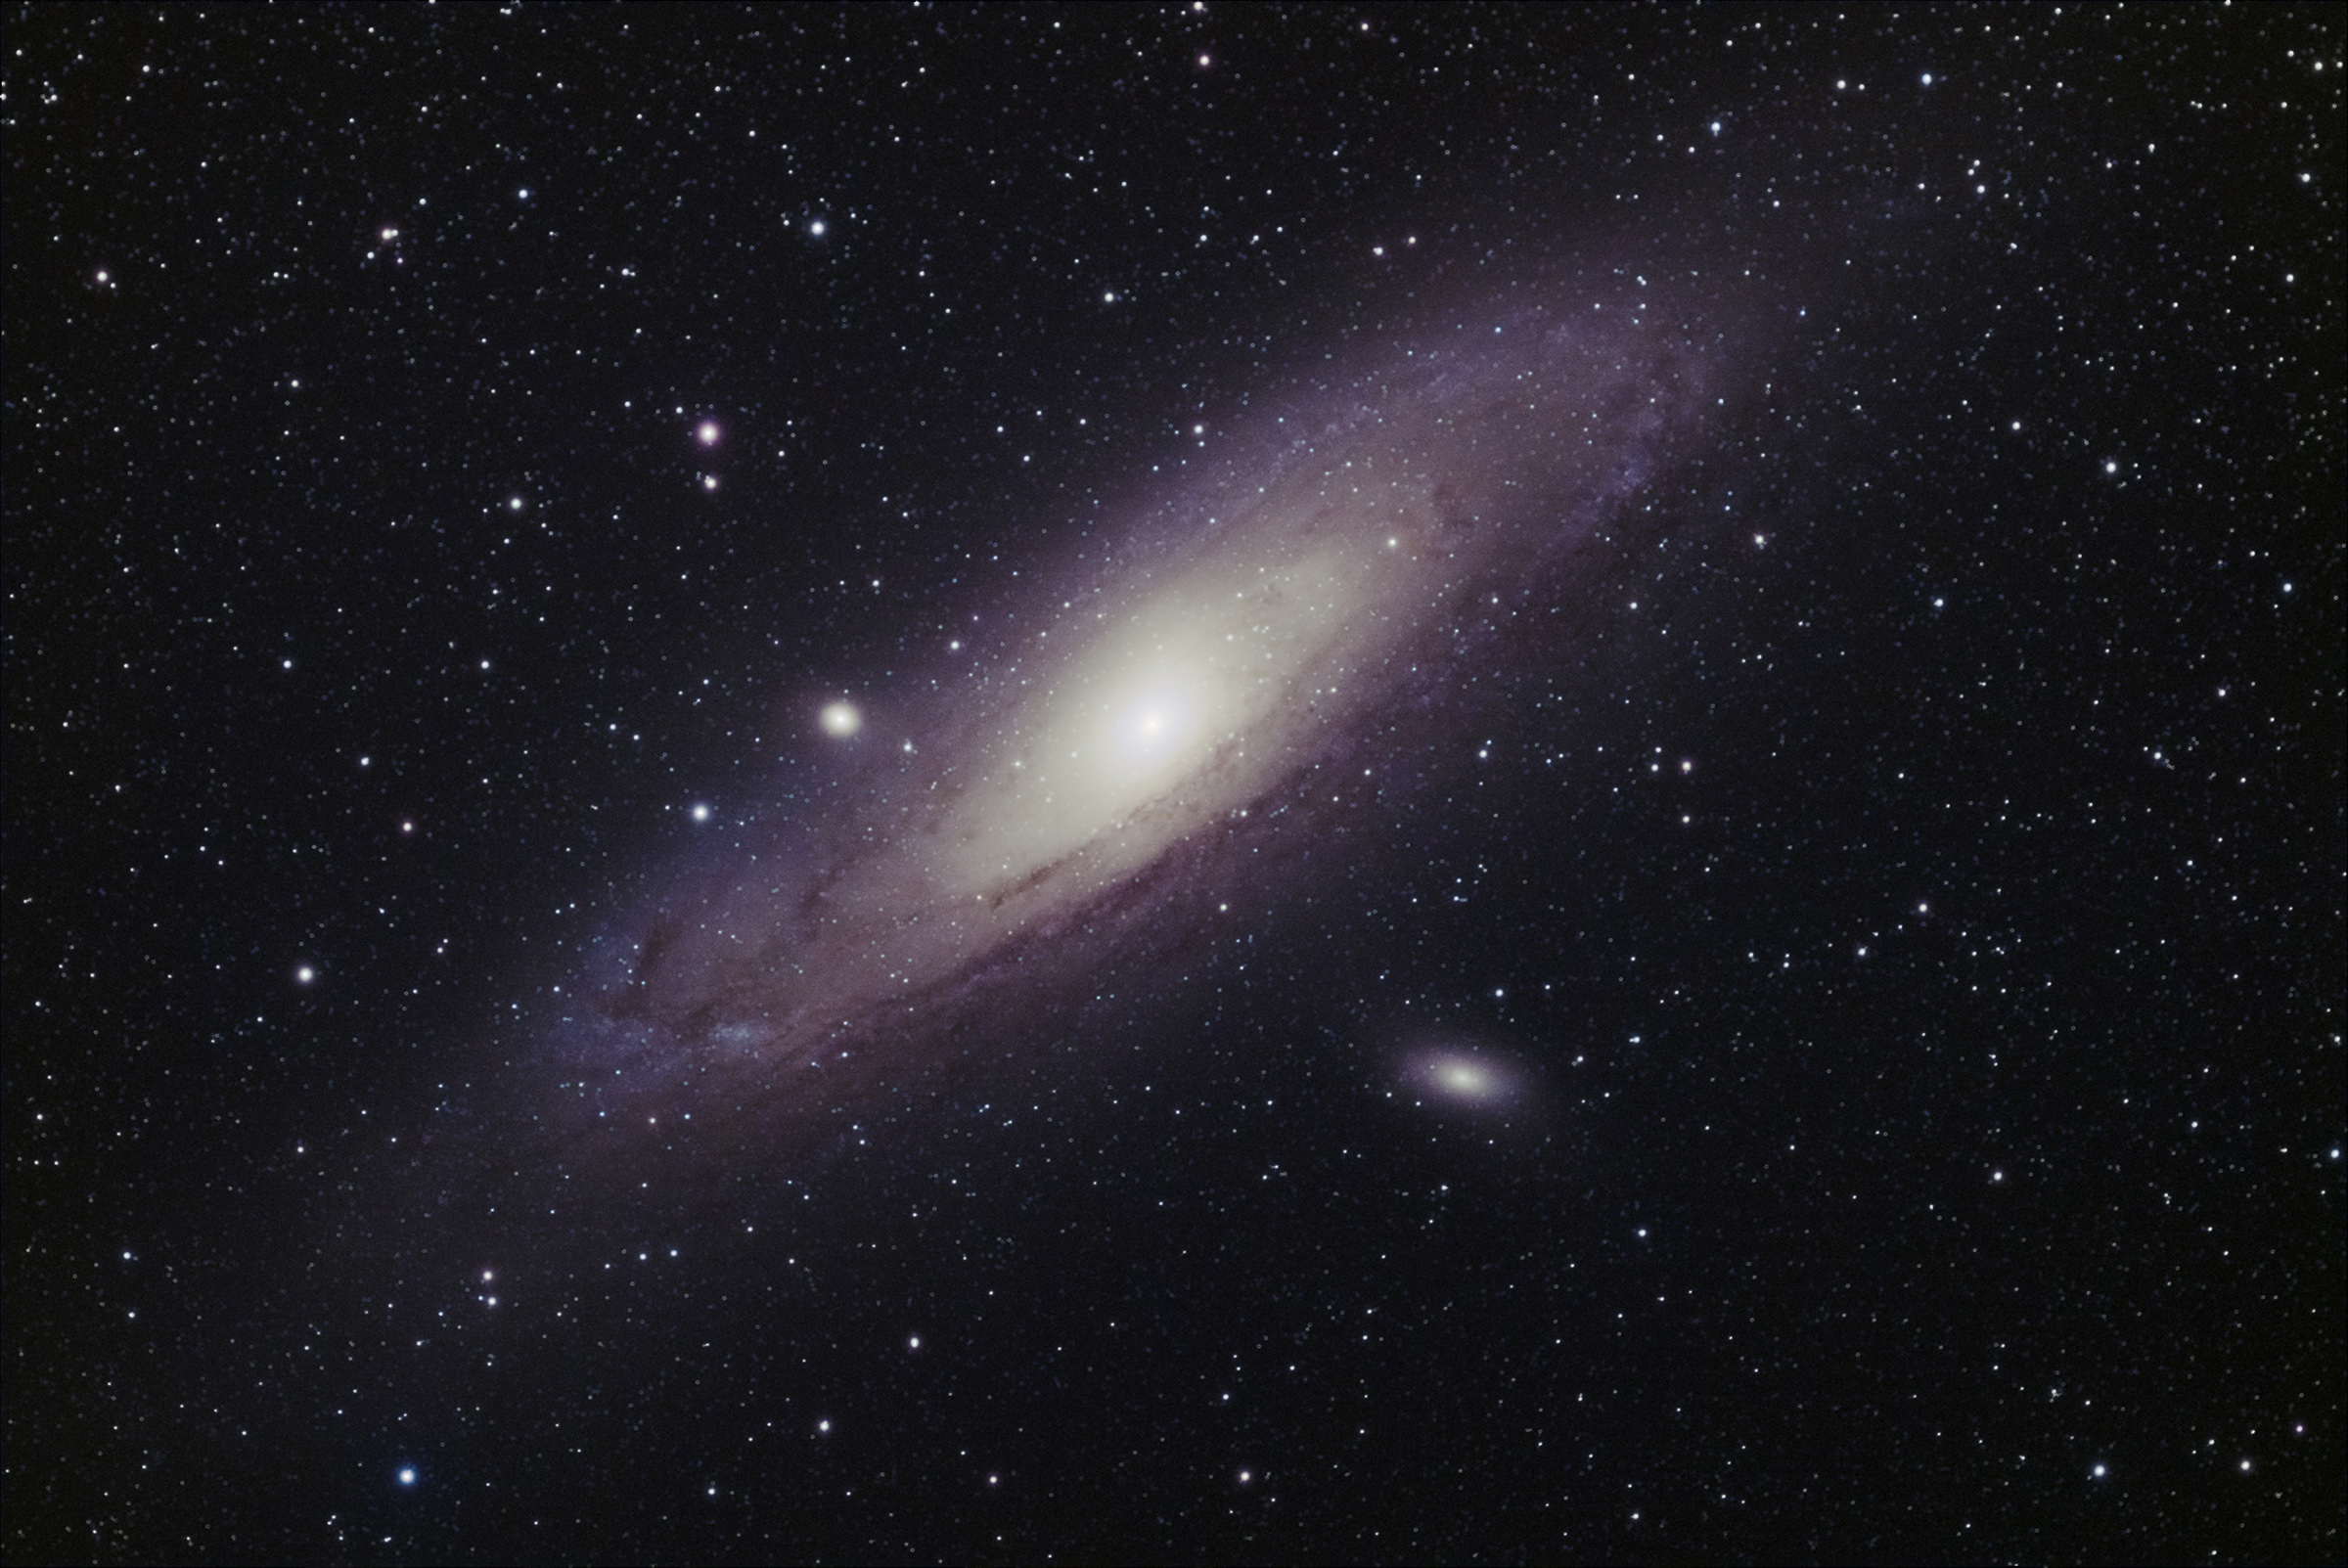 04 - M31/Andromeda Galaxy